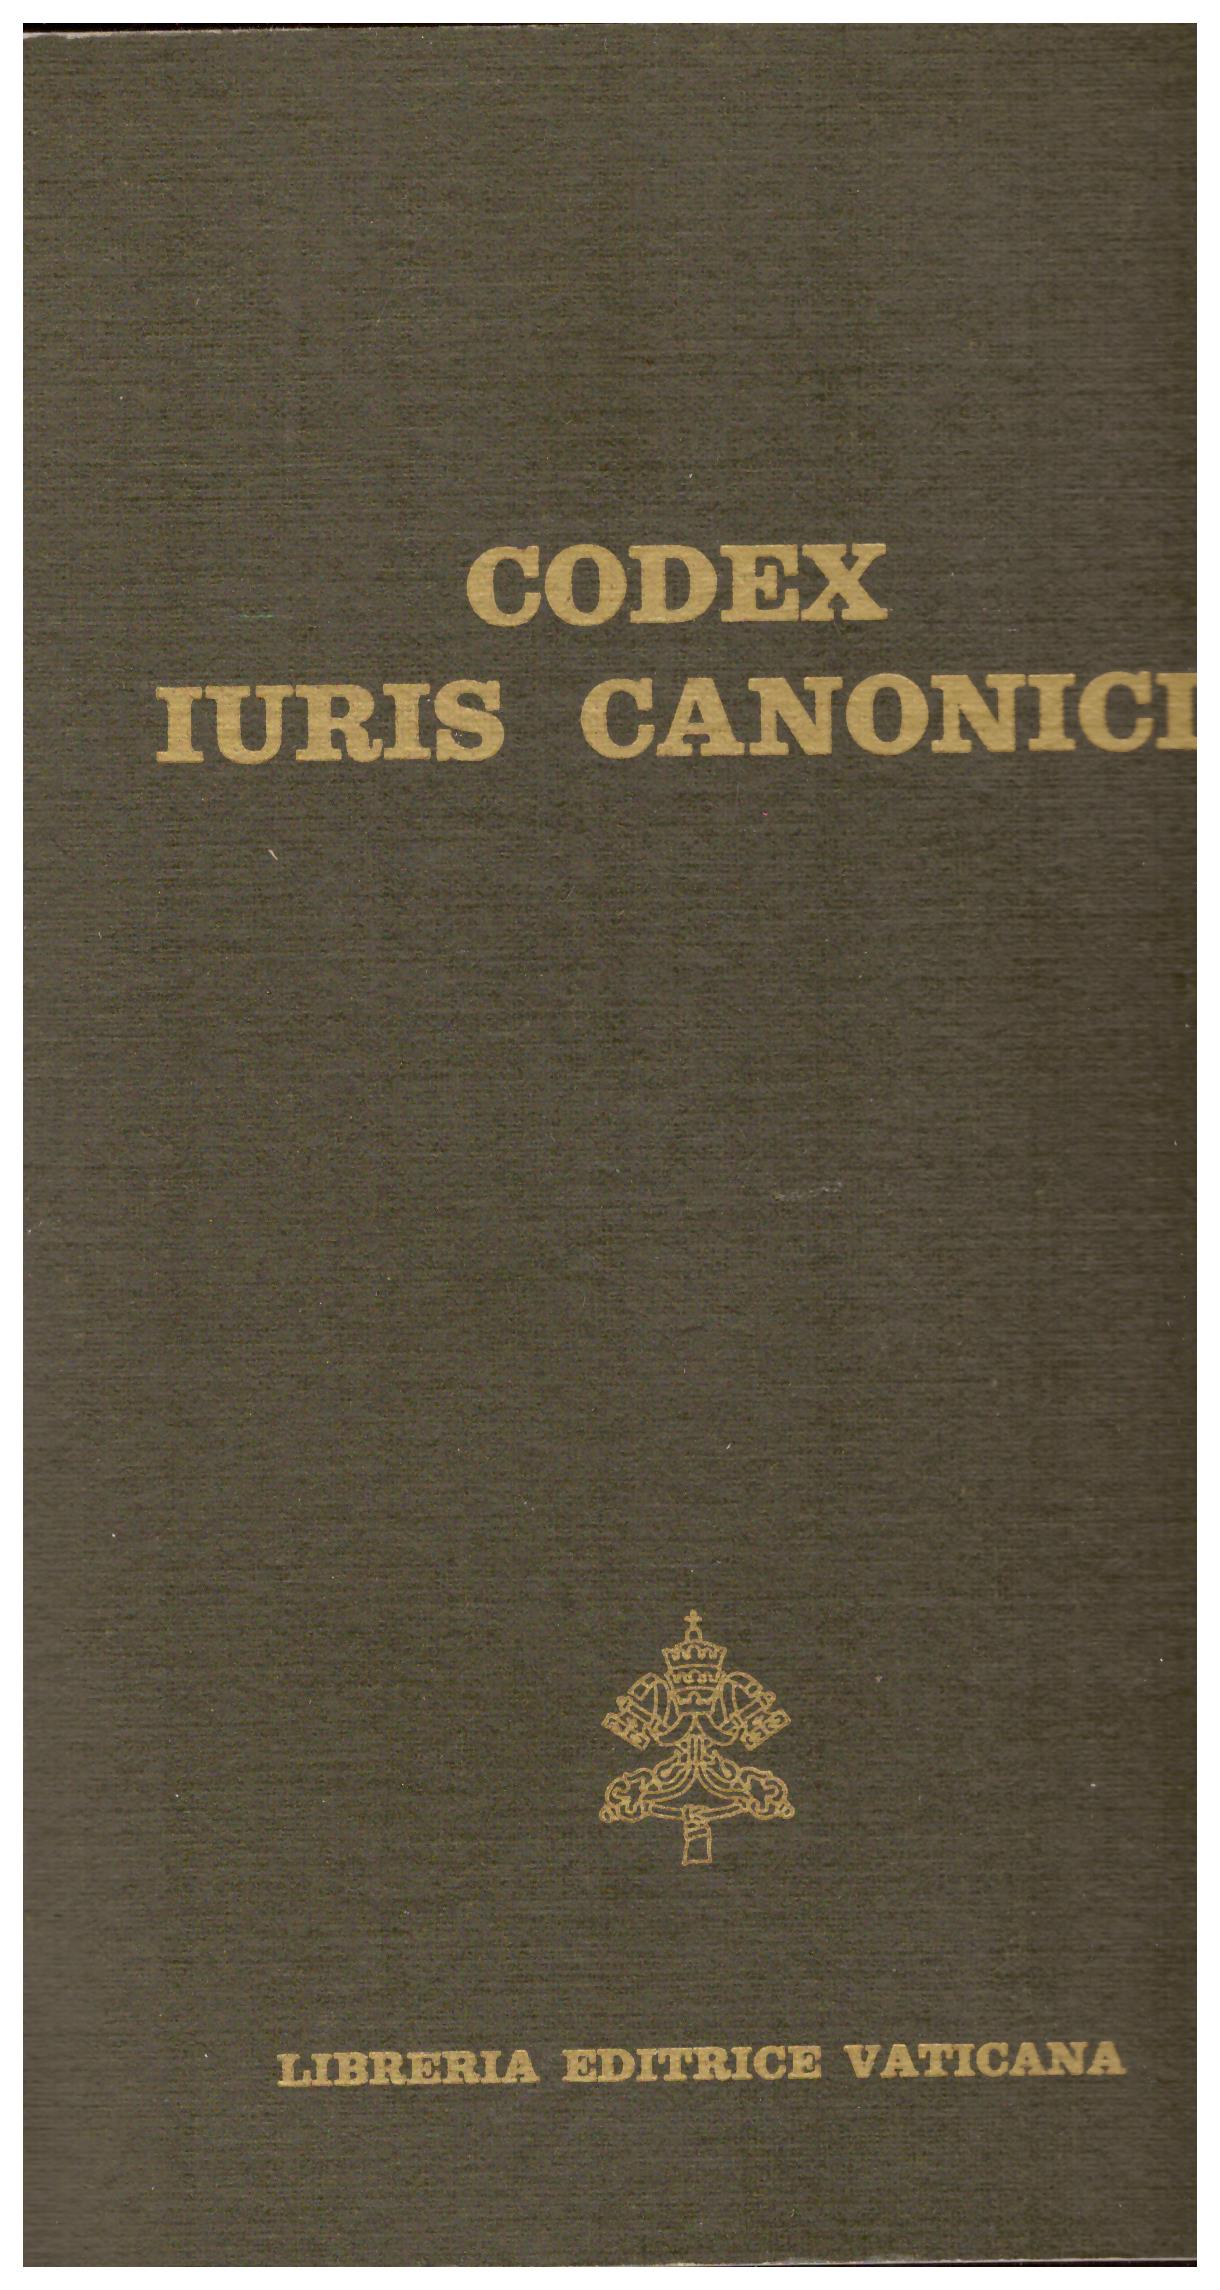 Titolo: Codex iuris canonici    Autore: AA.VV.     Editore: Libreria editrice vaticana